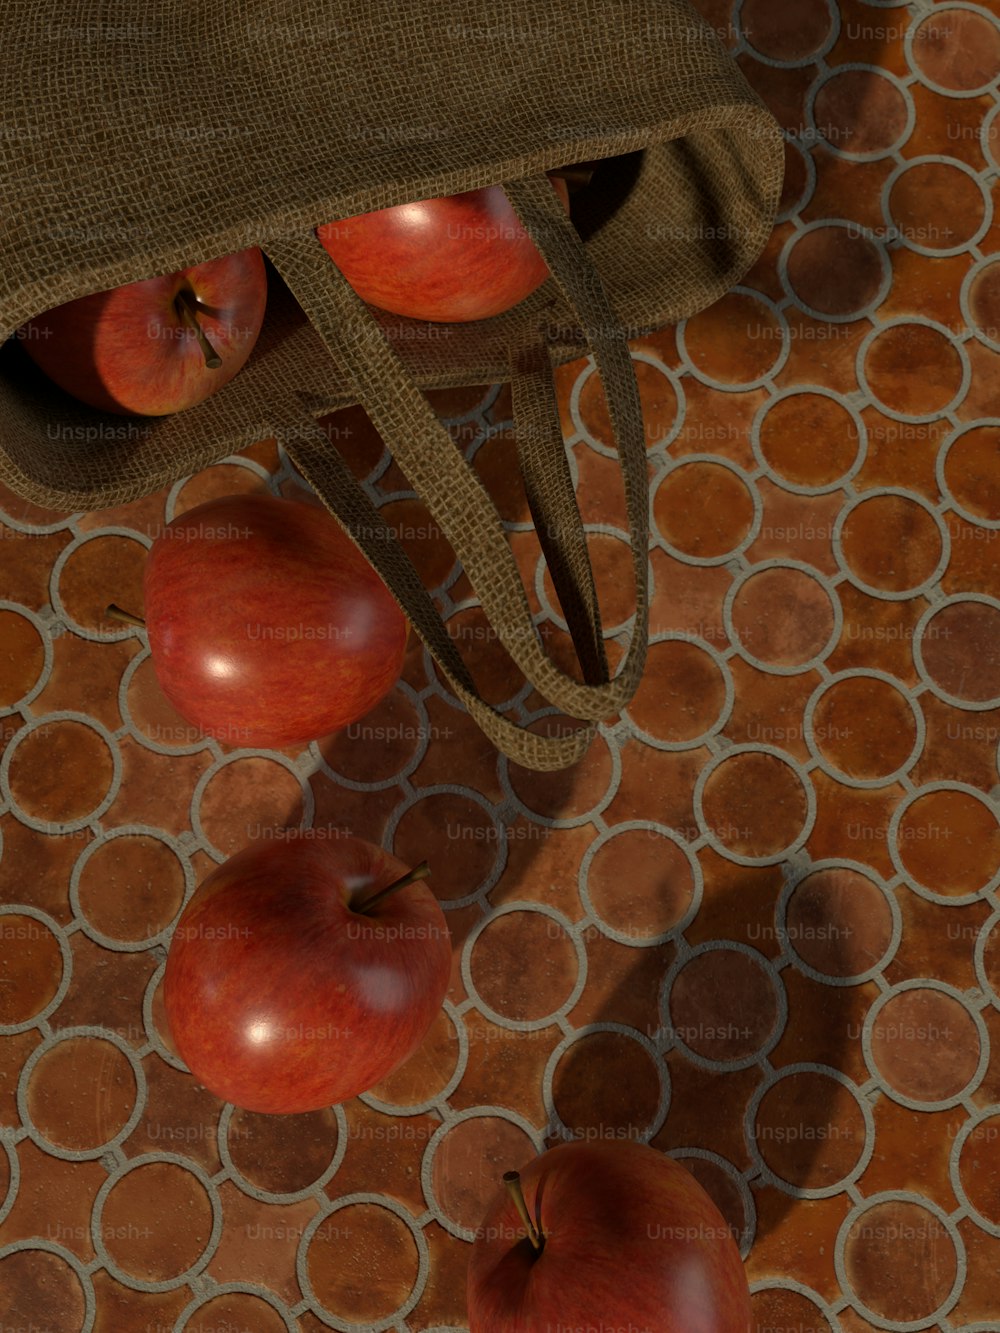 タイル張りの床の上に座っているリンゴのグループ